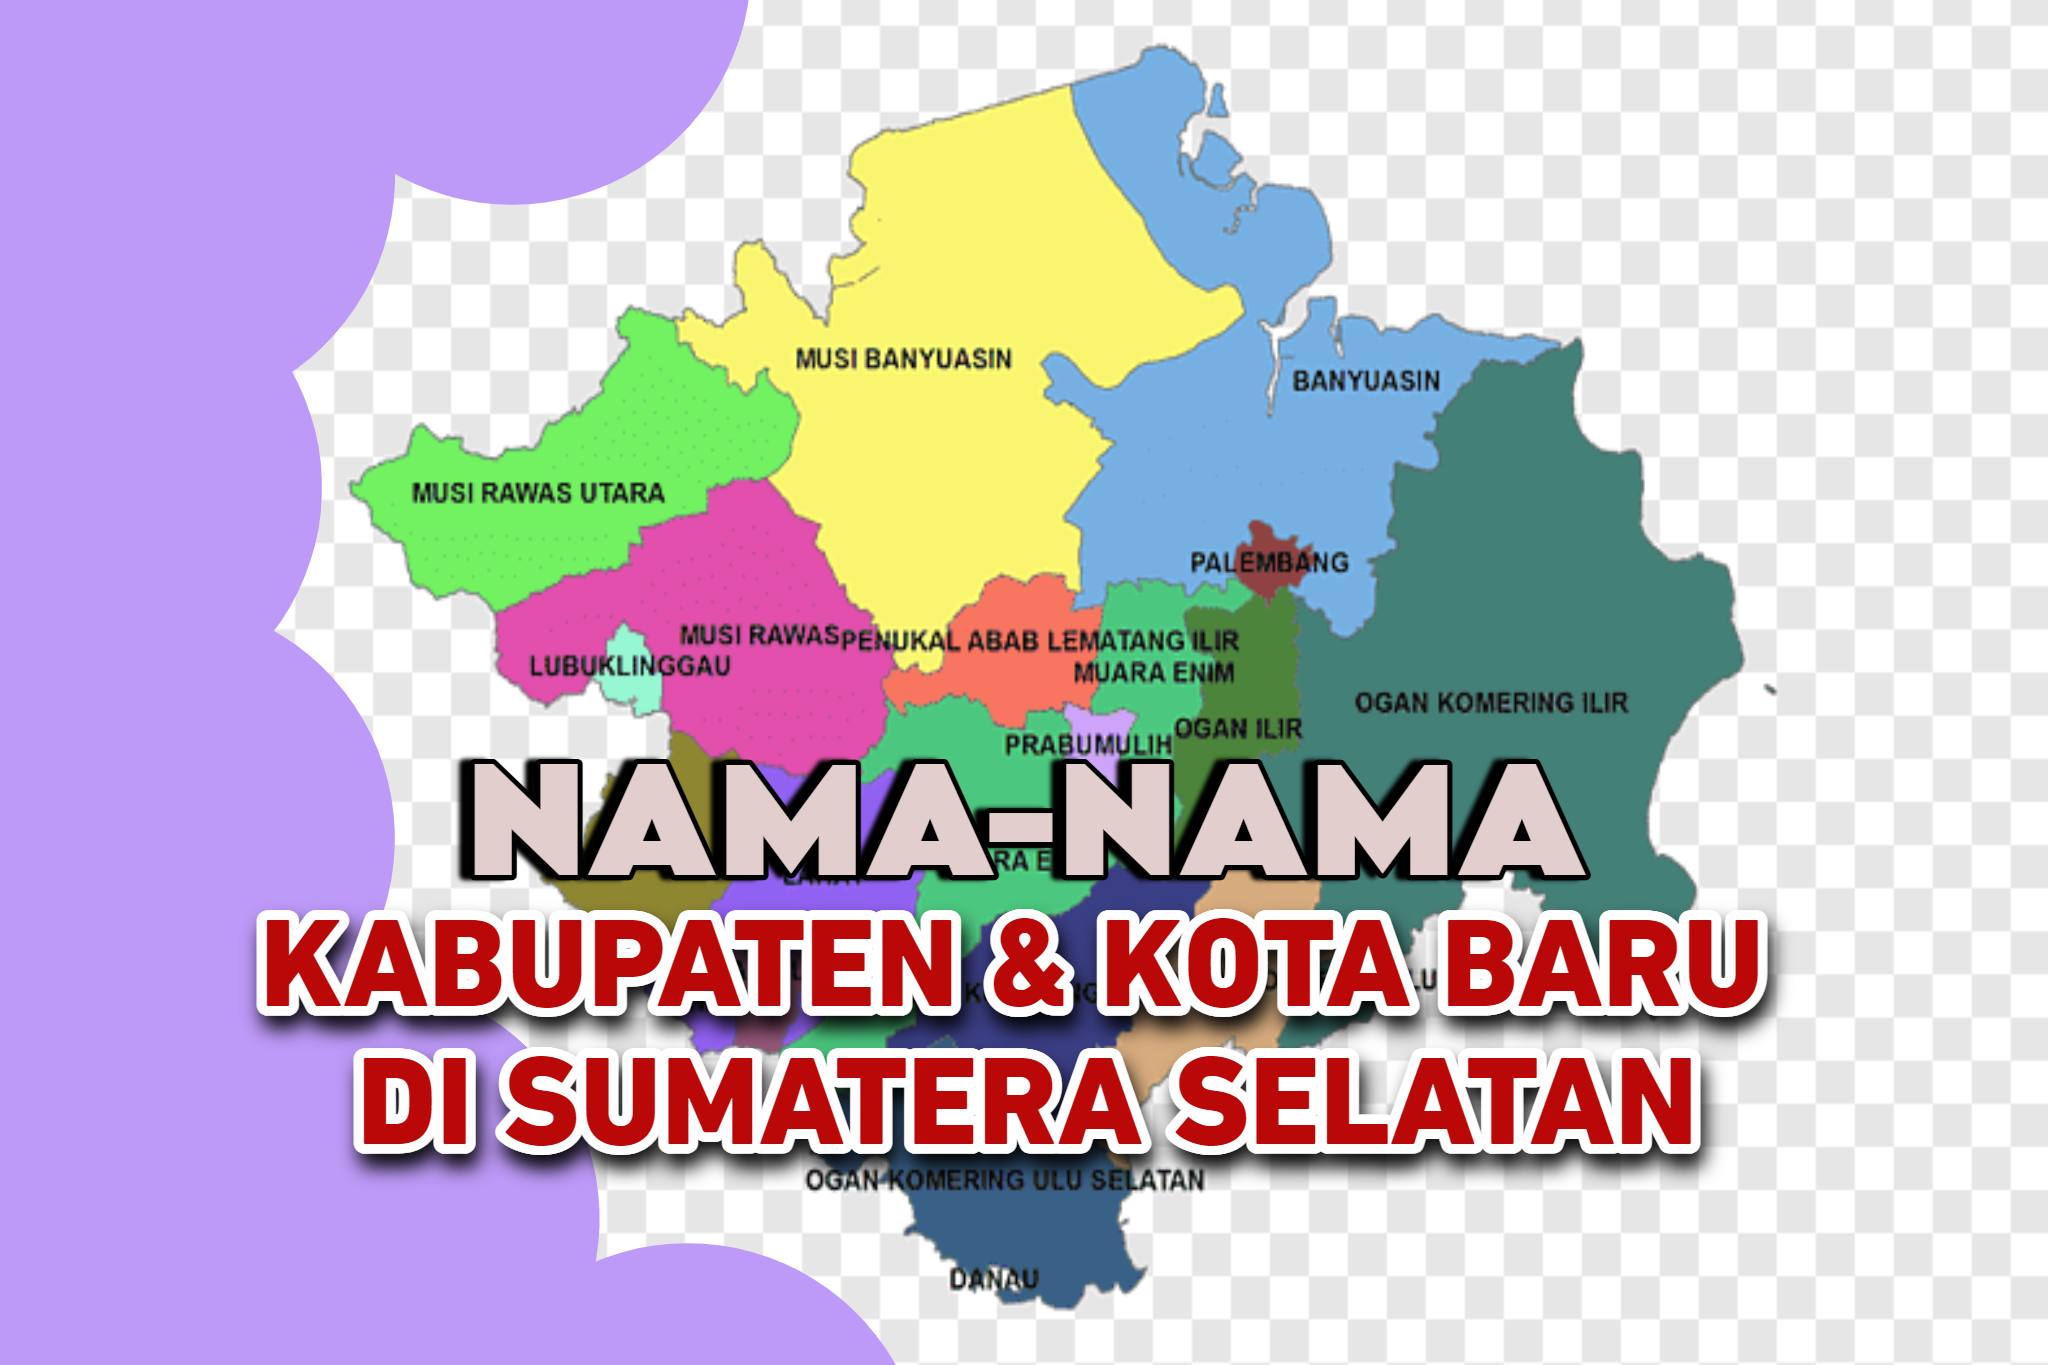 Daftar Nama-Nama Calon Daerah Baru di Sumatera Selatan, 2 Kota dan 8 Kabupaten